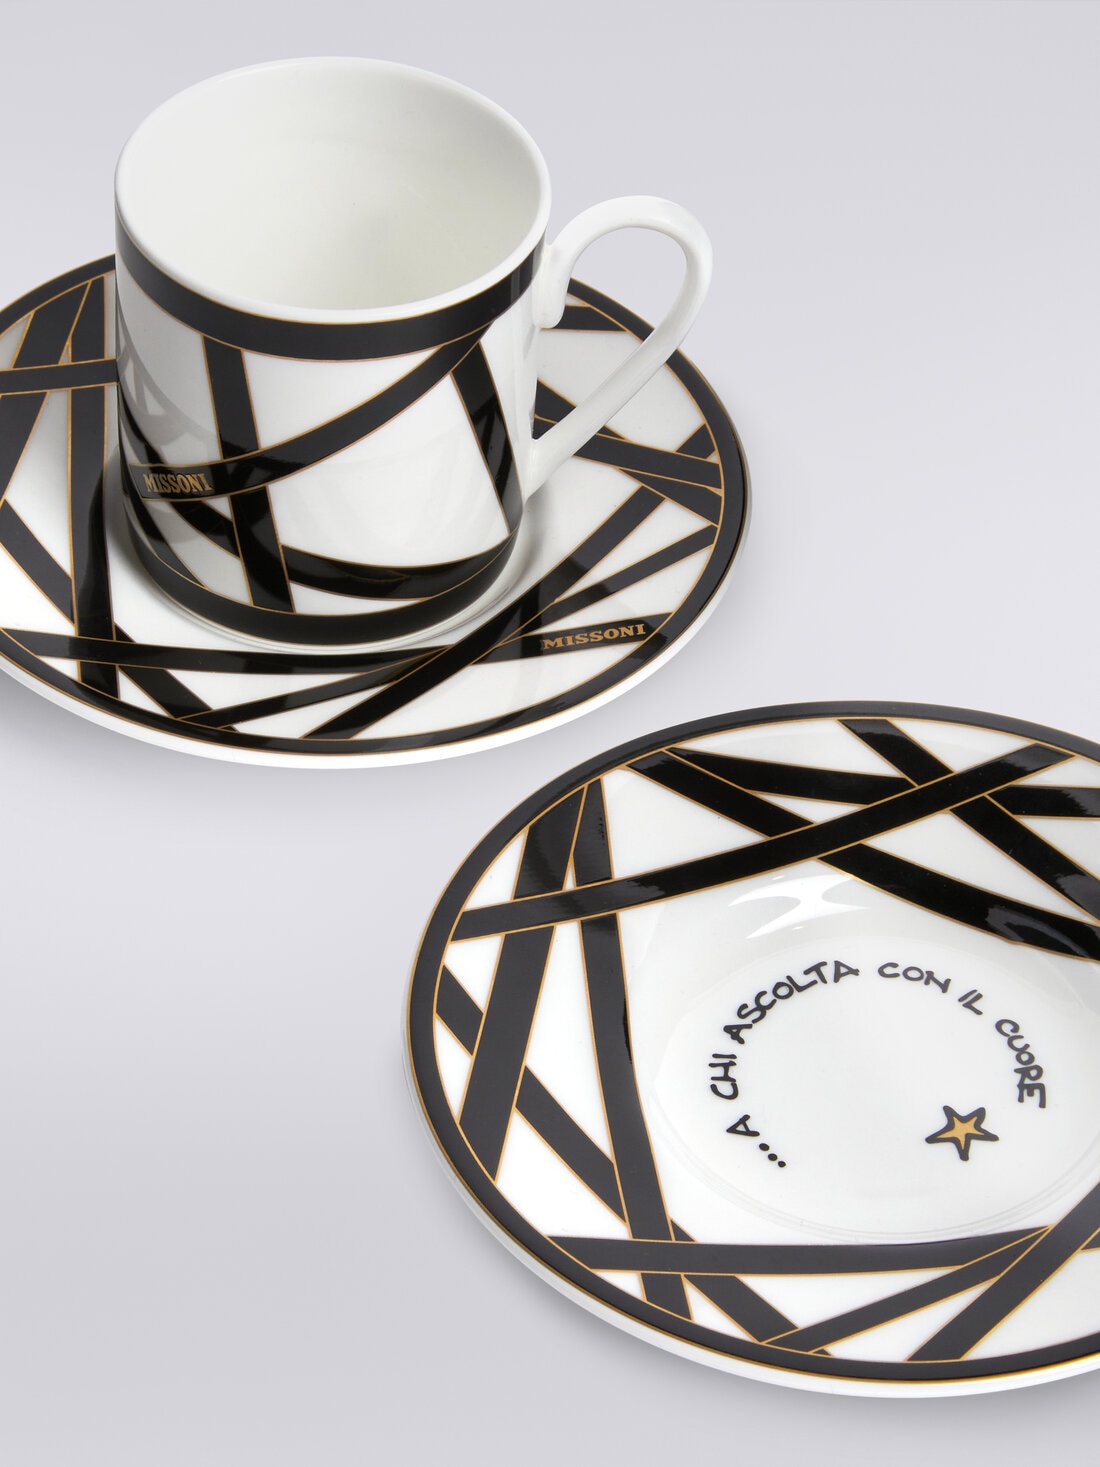 Missoni x Suonare Stella coffee cup and saucer set, Black & Multicoloured  - 8053147146485 - 3